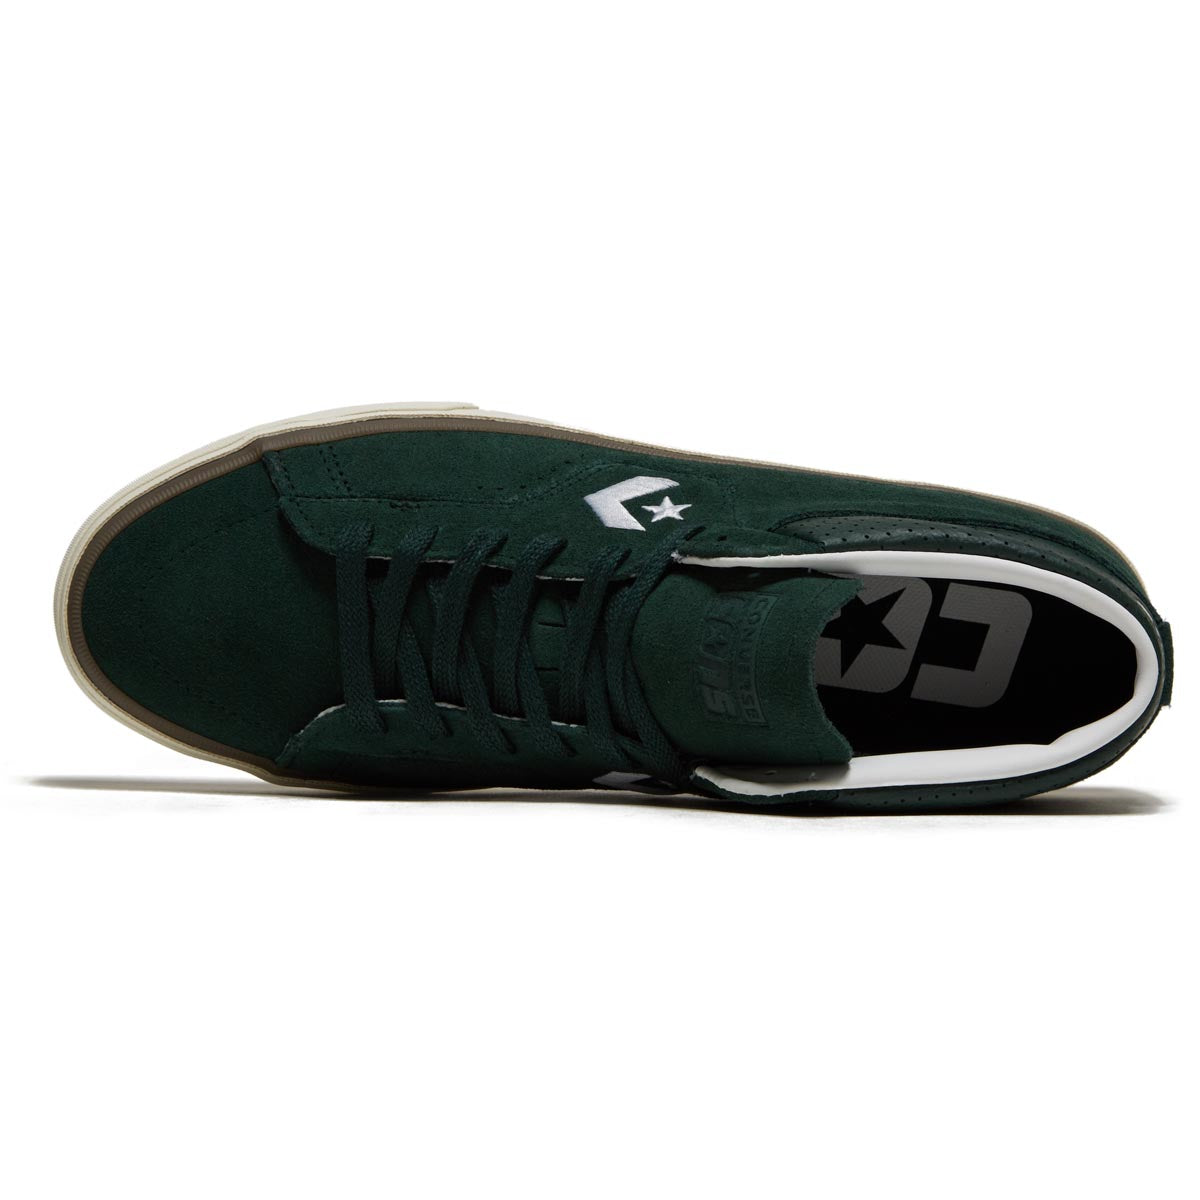 Converse Louie Lopez Pro Mid Shoes - Deep Emerald/White/Egret image 3